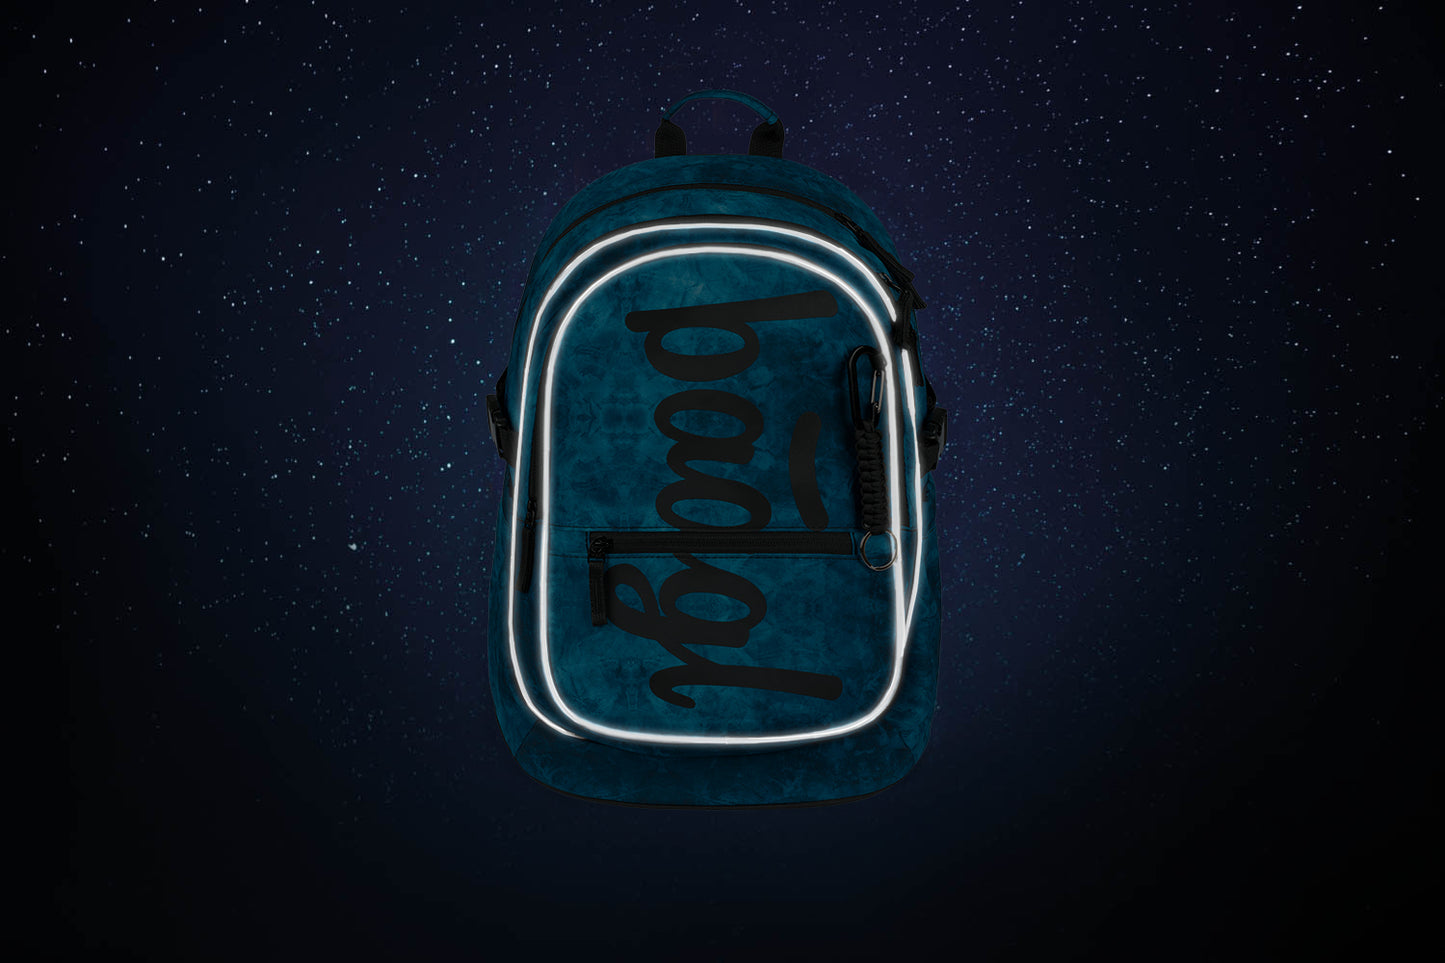 Školní batoh Core Ocean